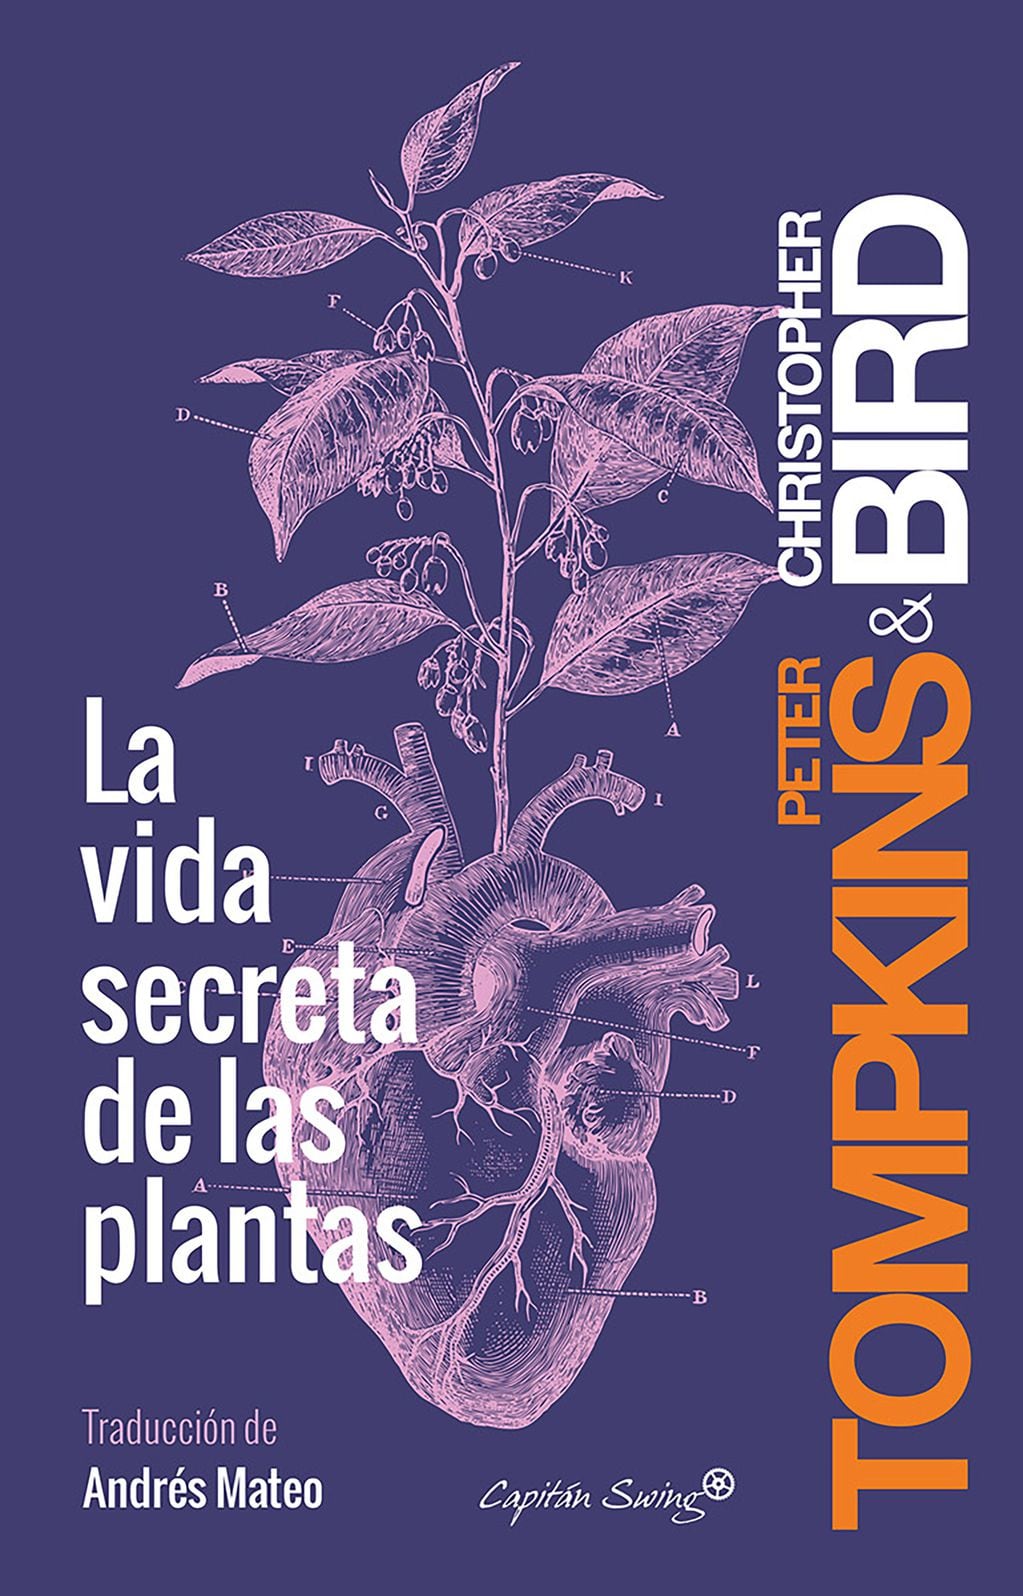 Publicado en 1973 por C. Bird y P. Tompkins, ambos agentes de la CIA, “La vida secreta de las plantas” pronto se volvió un best seller mundial.  